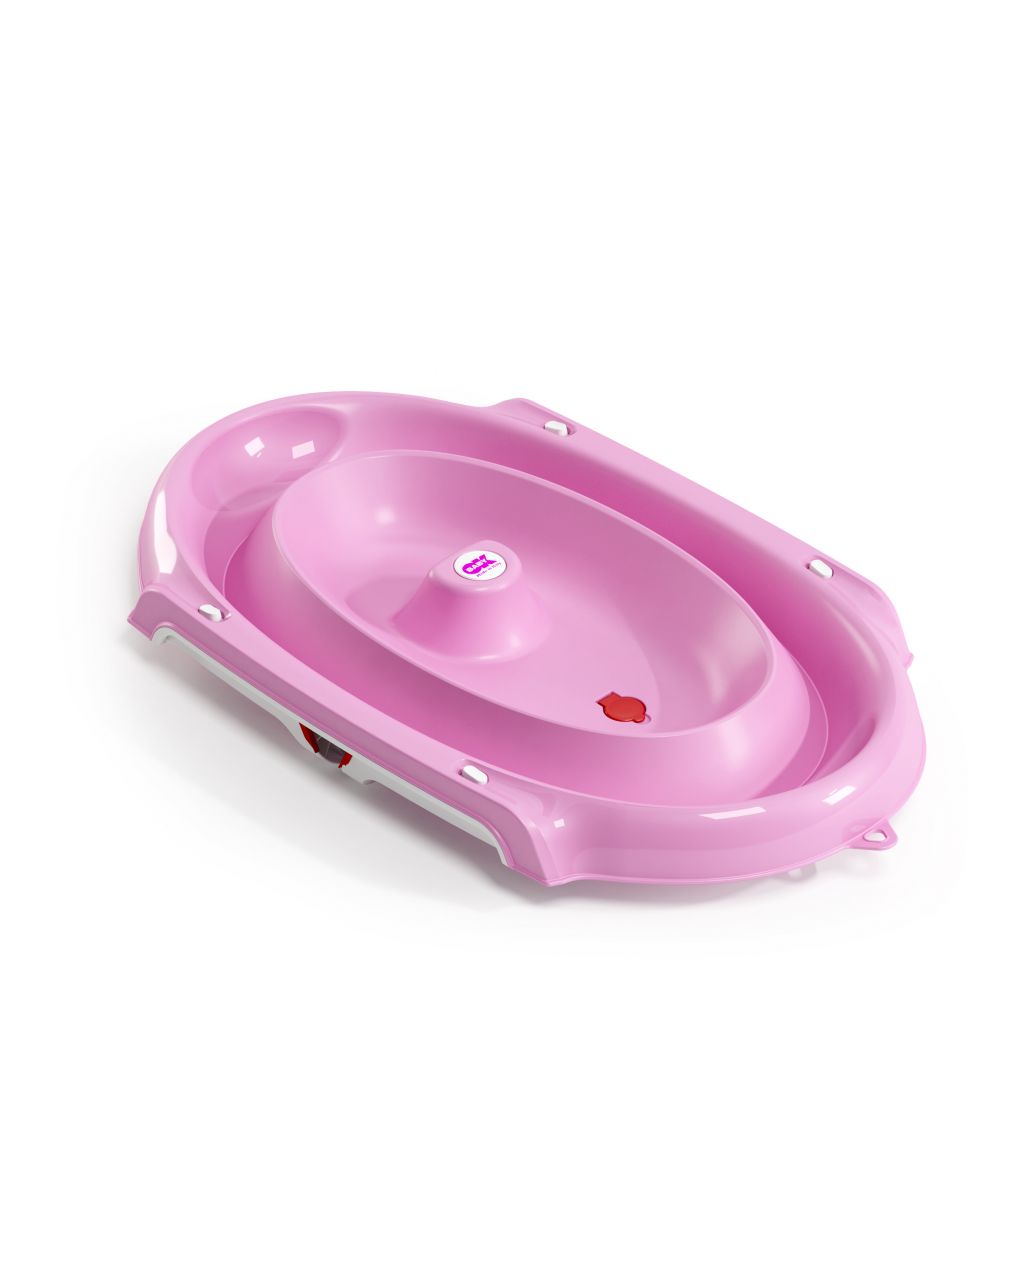 OkBaby Pink Onda Slim Bath Tub : : Baby Products